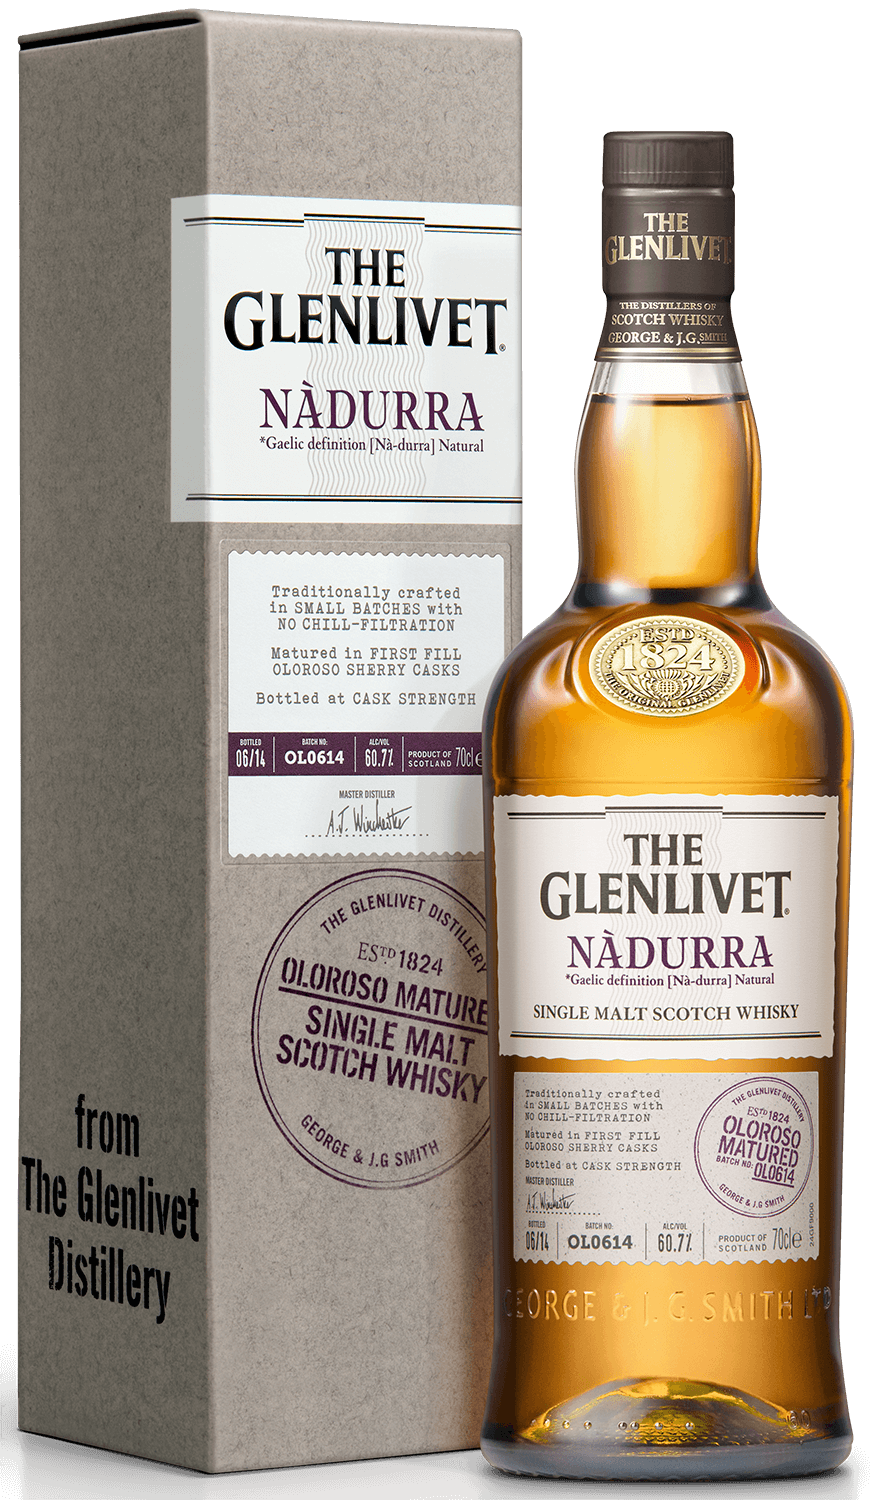 The Glenlivet Nadurra Oloroso Matured single malt scotch whisky (gift box)